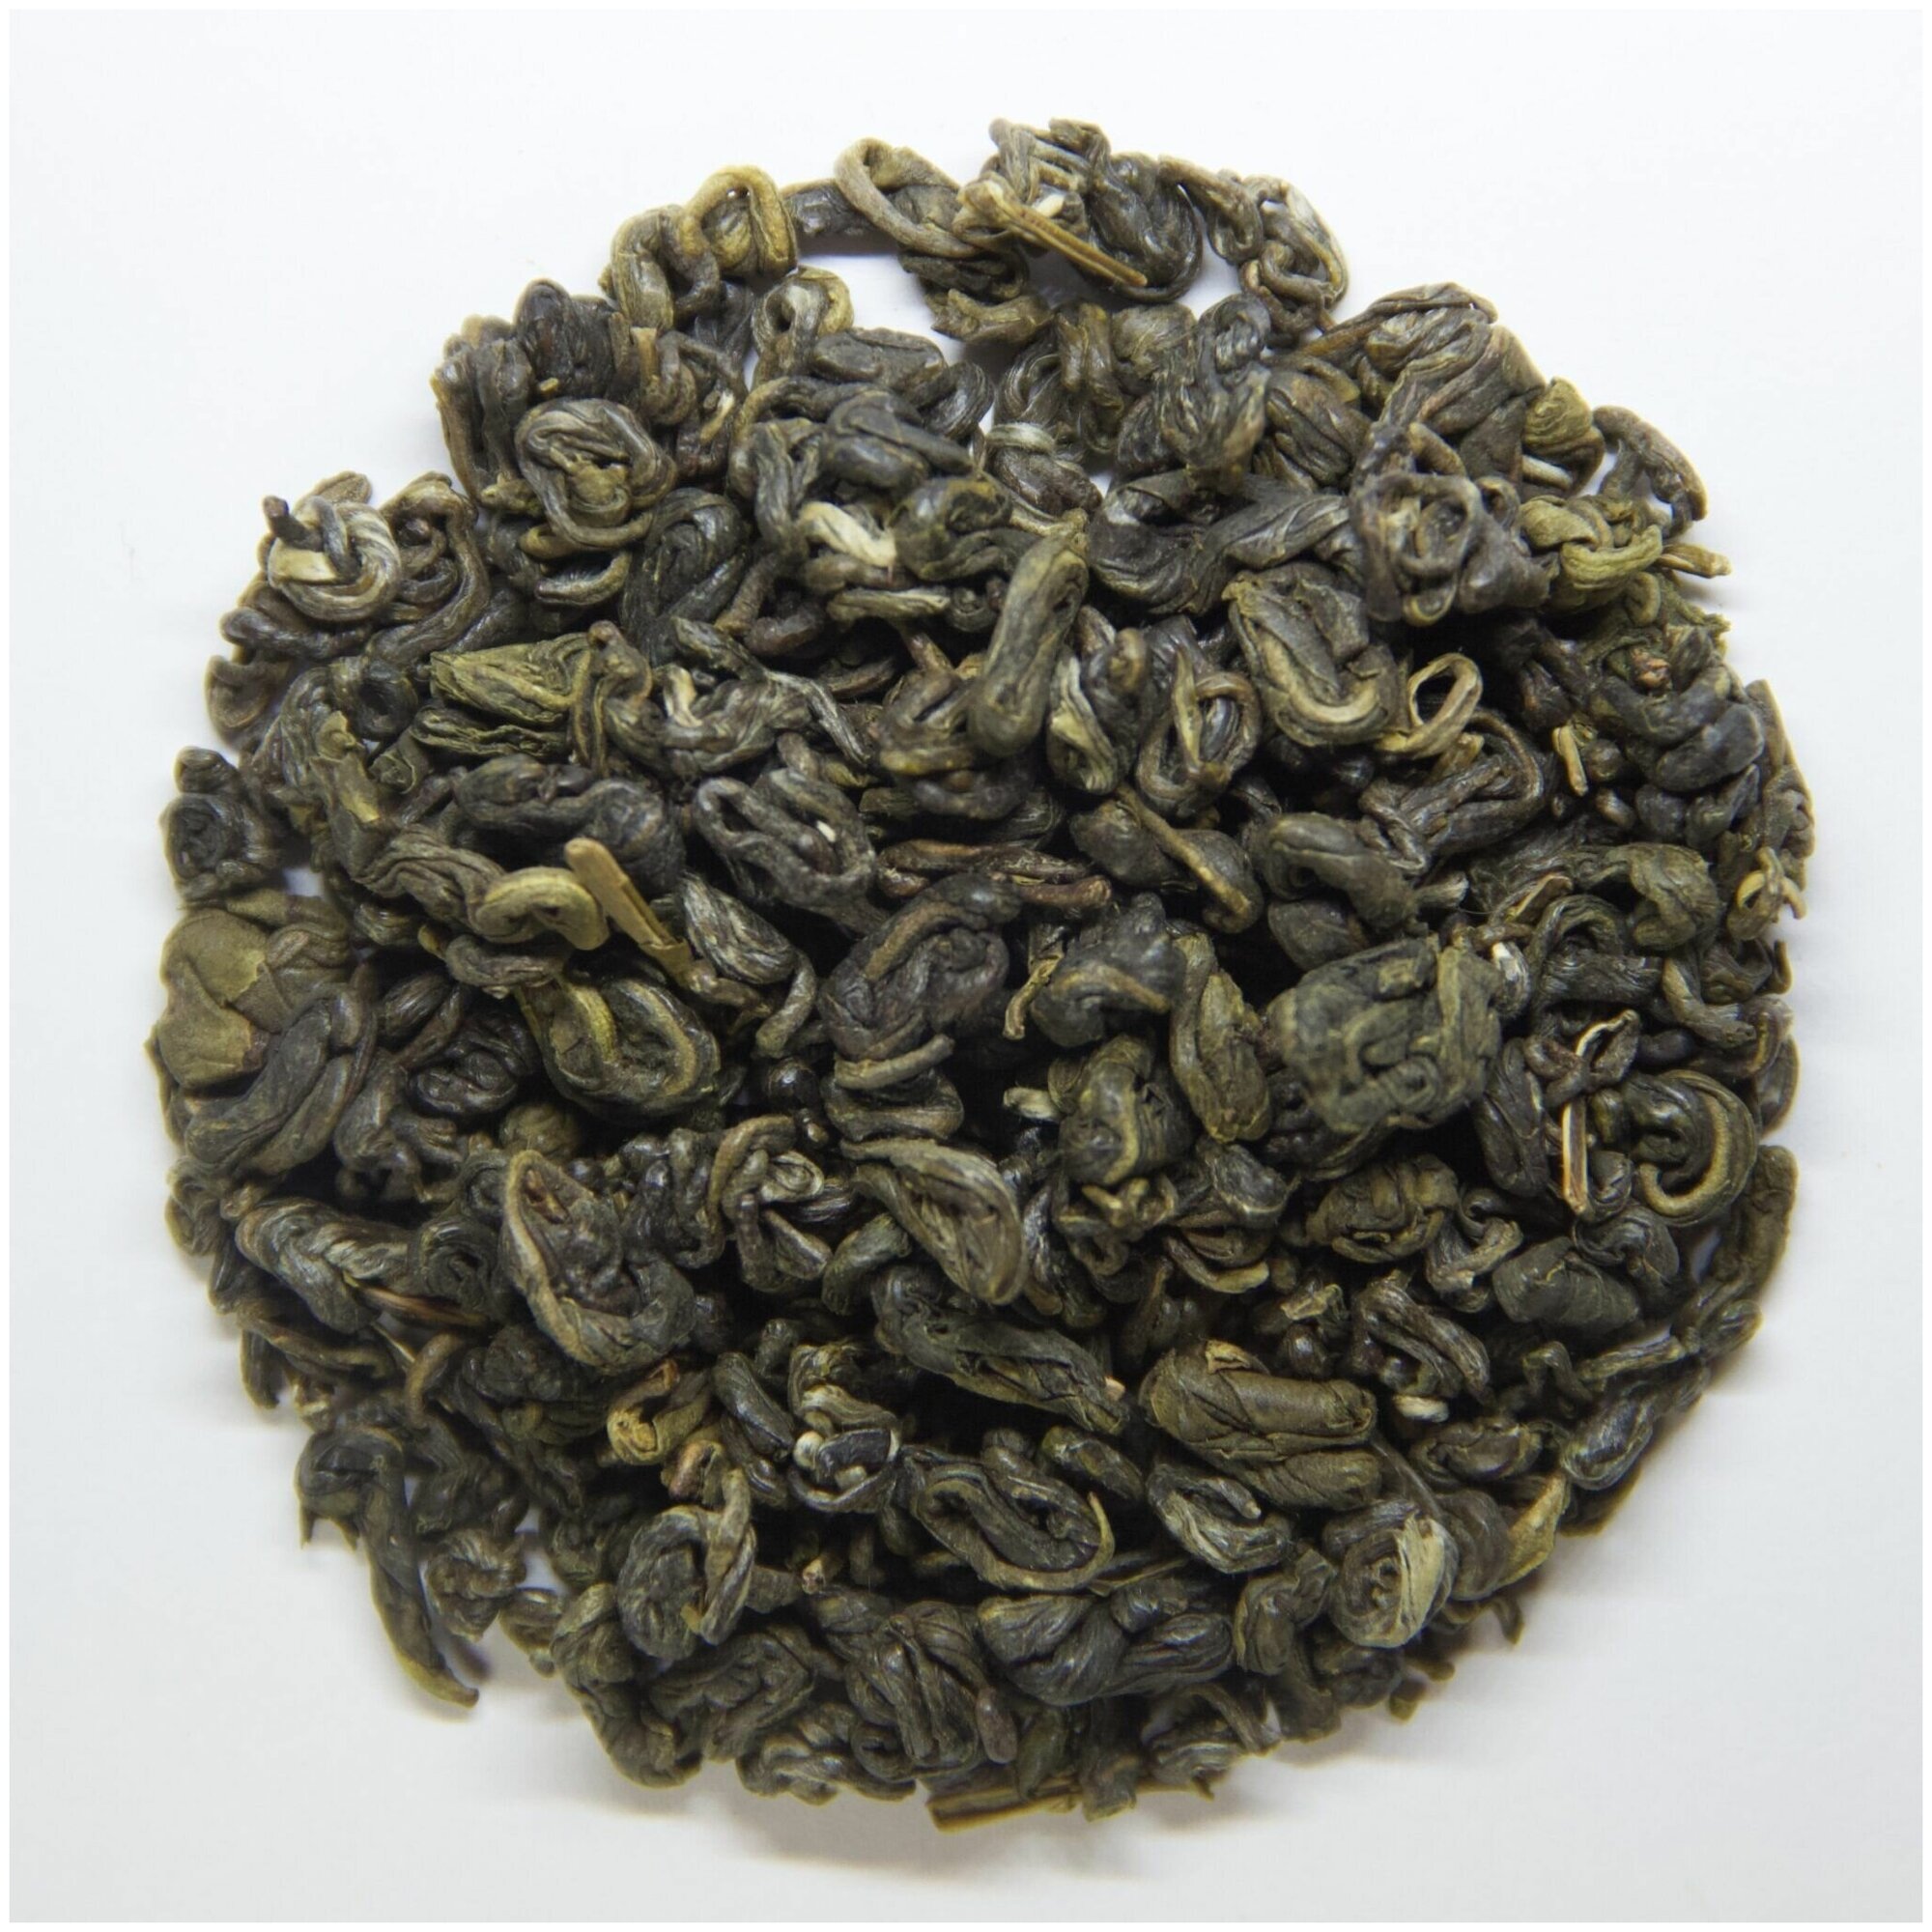 Настоящий китайский Зеленый чай Би Ло Чунь Билочунь / Зеленая улитка 100 г